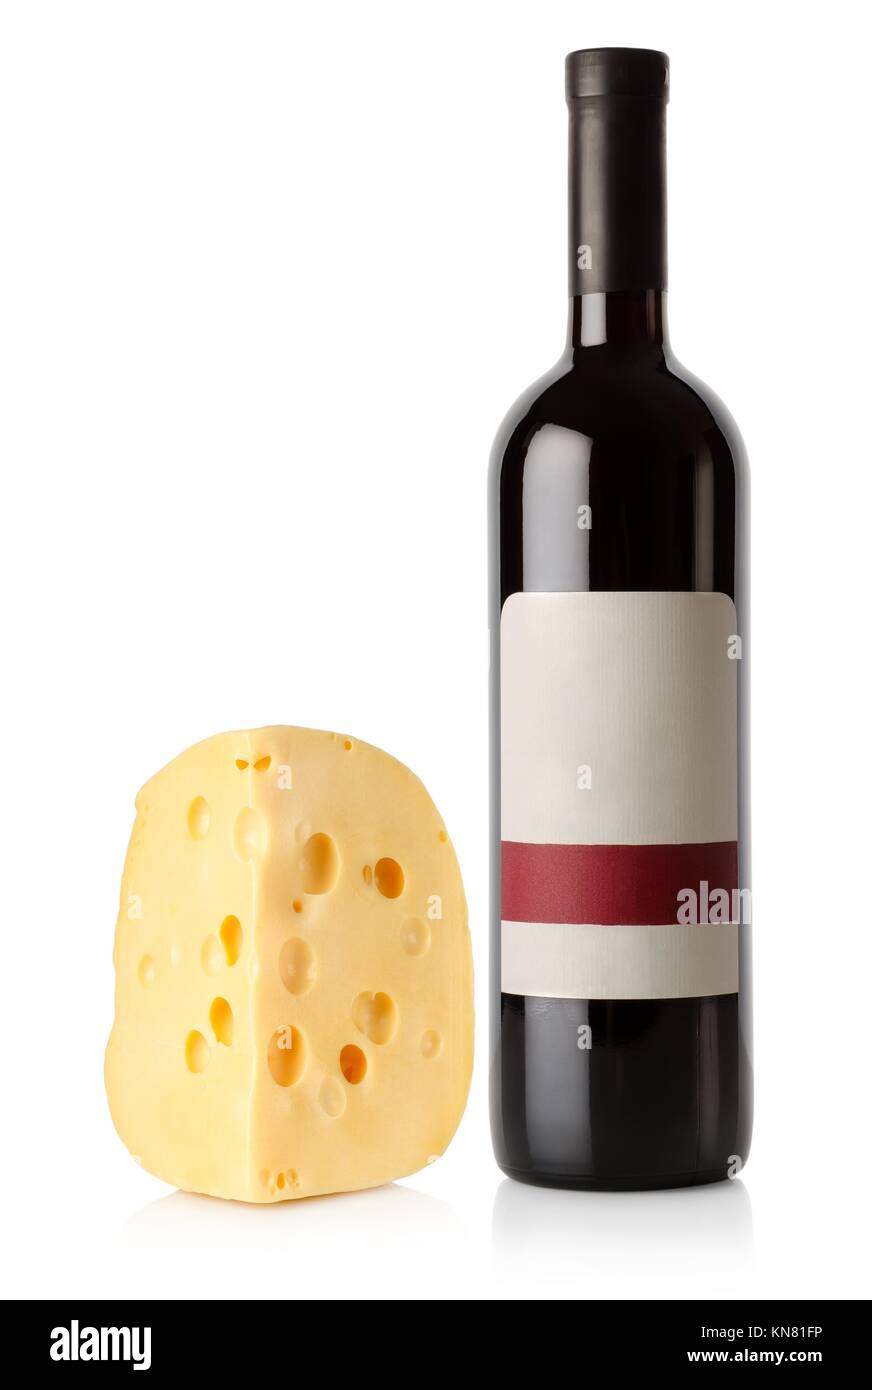 Flasche Wein und Holländischen Käse auf einem weißen Hintergrund  Stockfotografie - Alamy